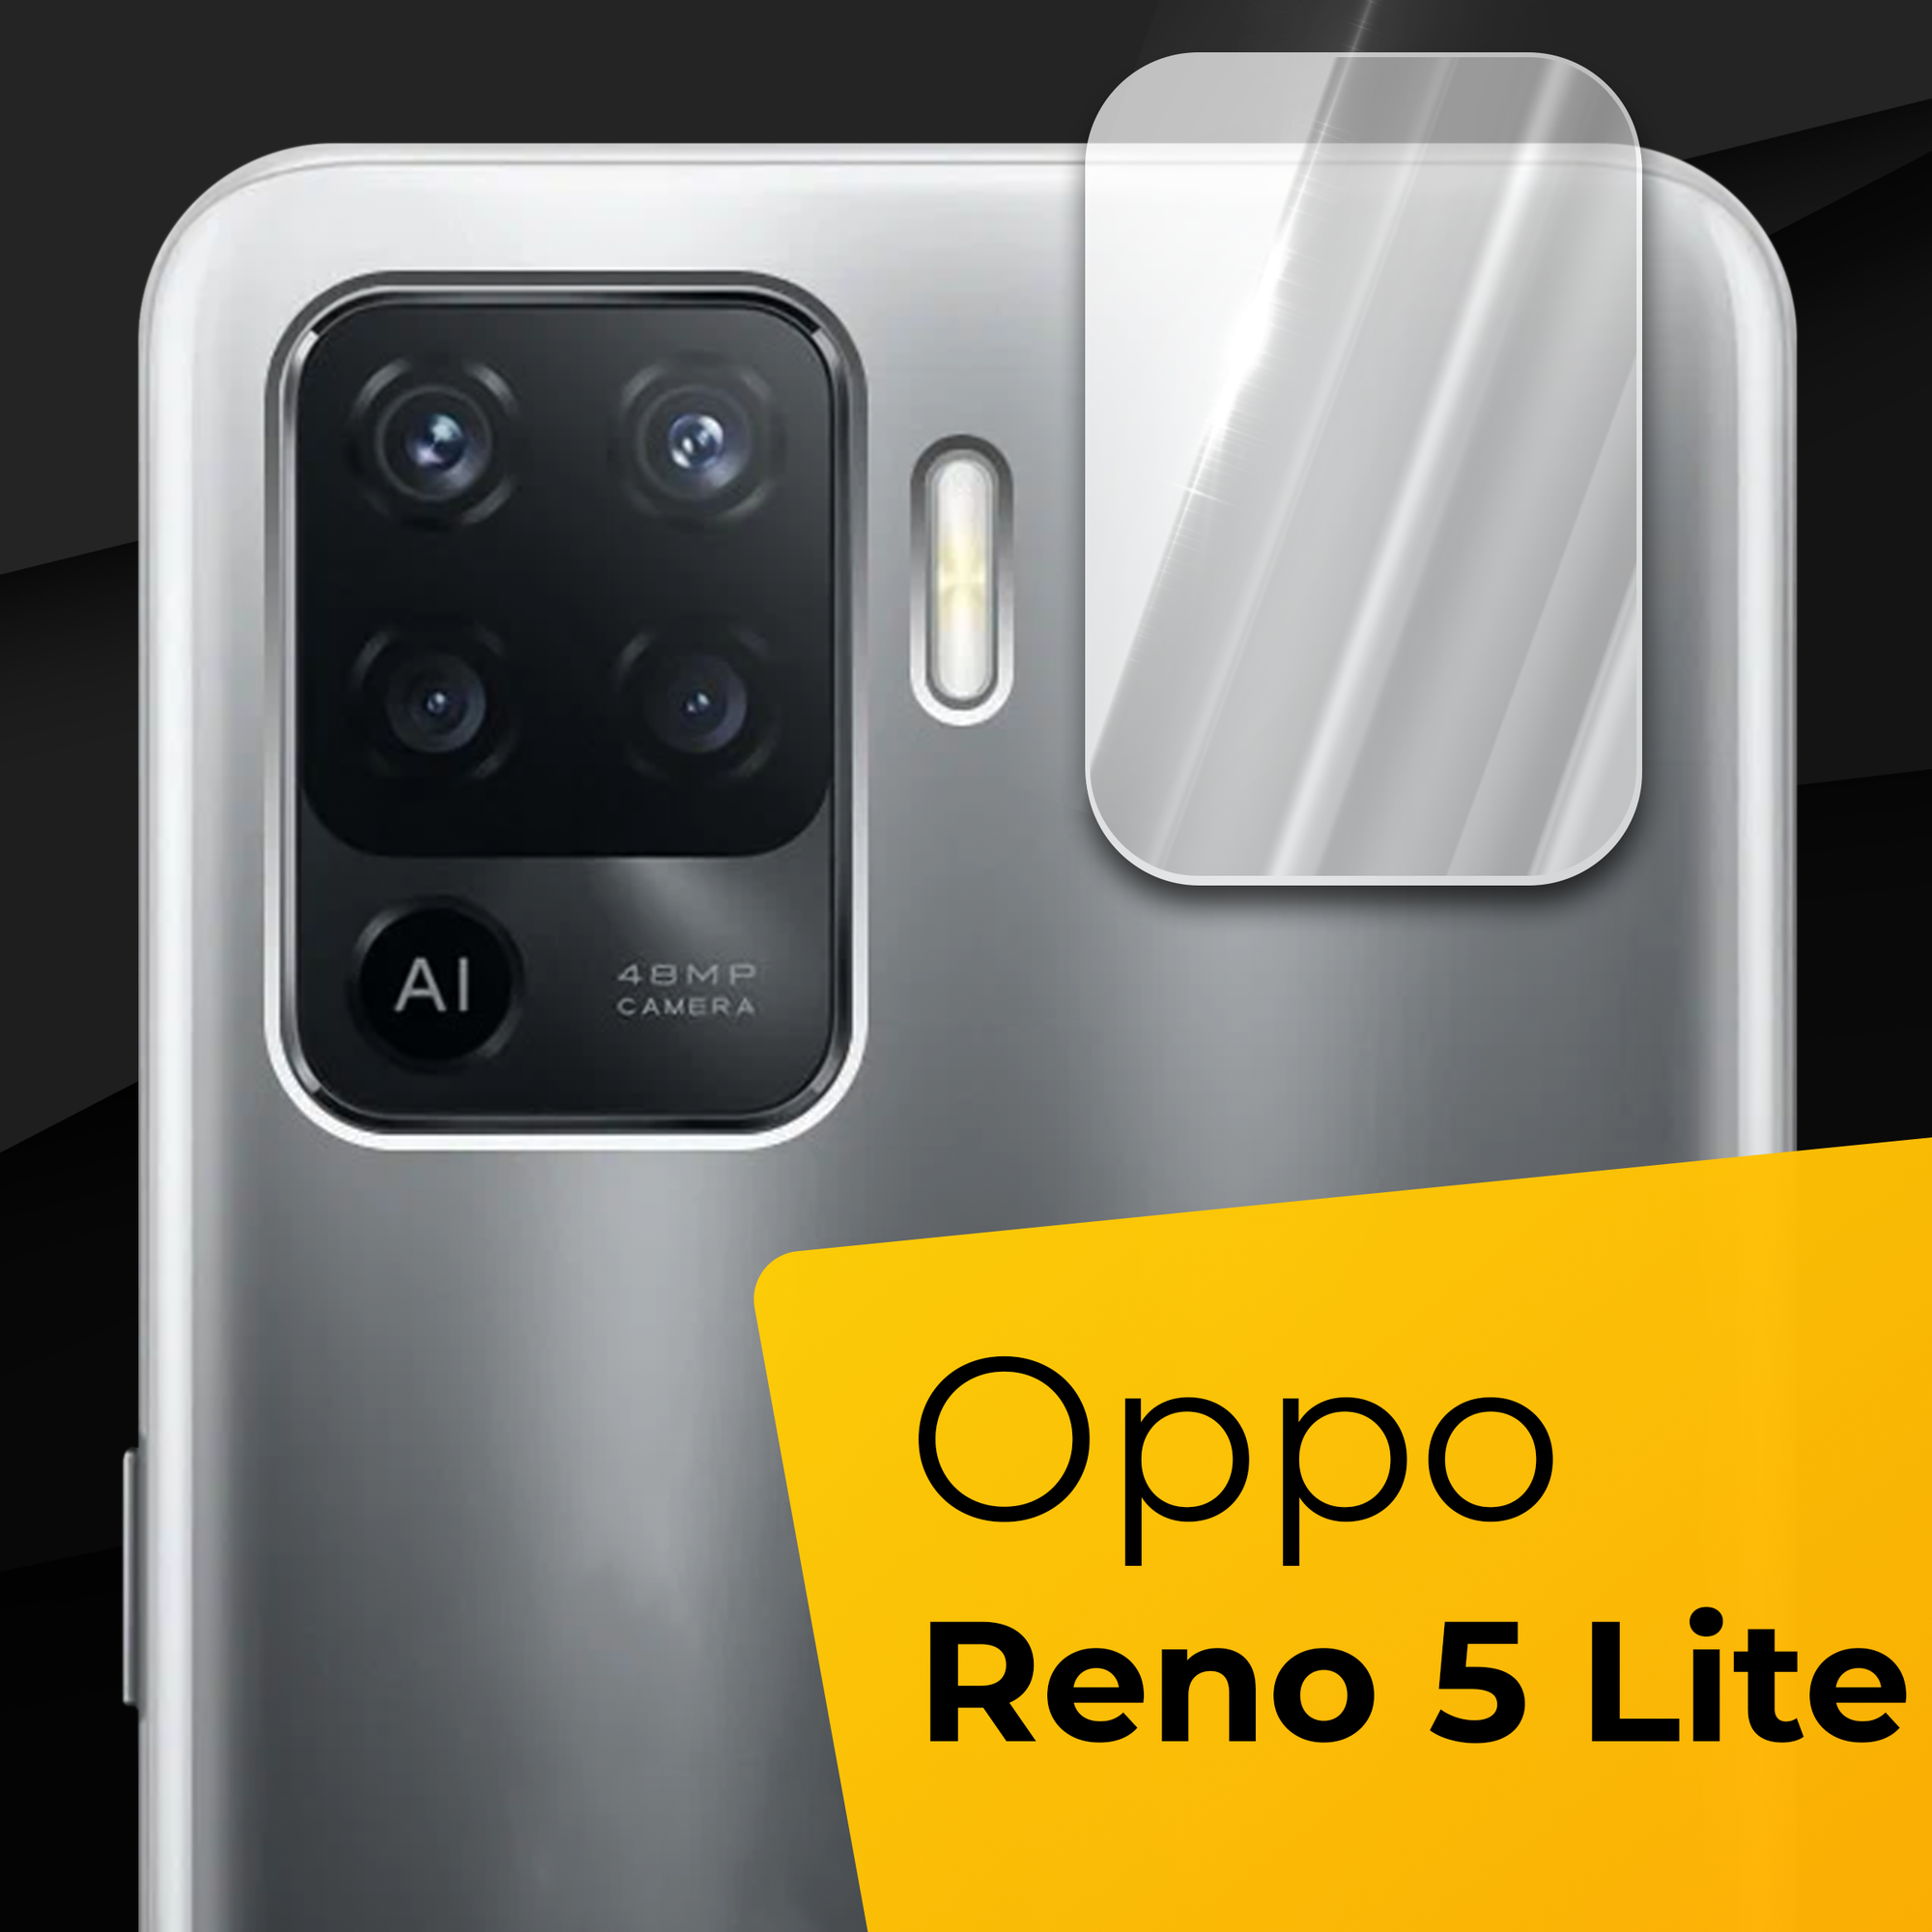 Противоударное защитное стекло для камеры телефона Oppo Reno 5 Lite / Тонкое прозрачное стекло на камеру смартфона Оппо Рено 5 Лайт / Защита камеры